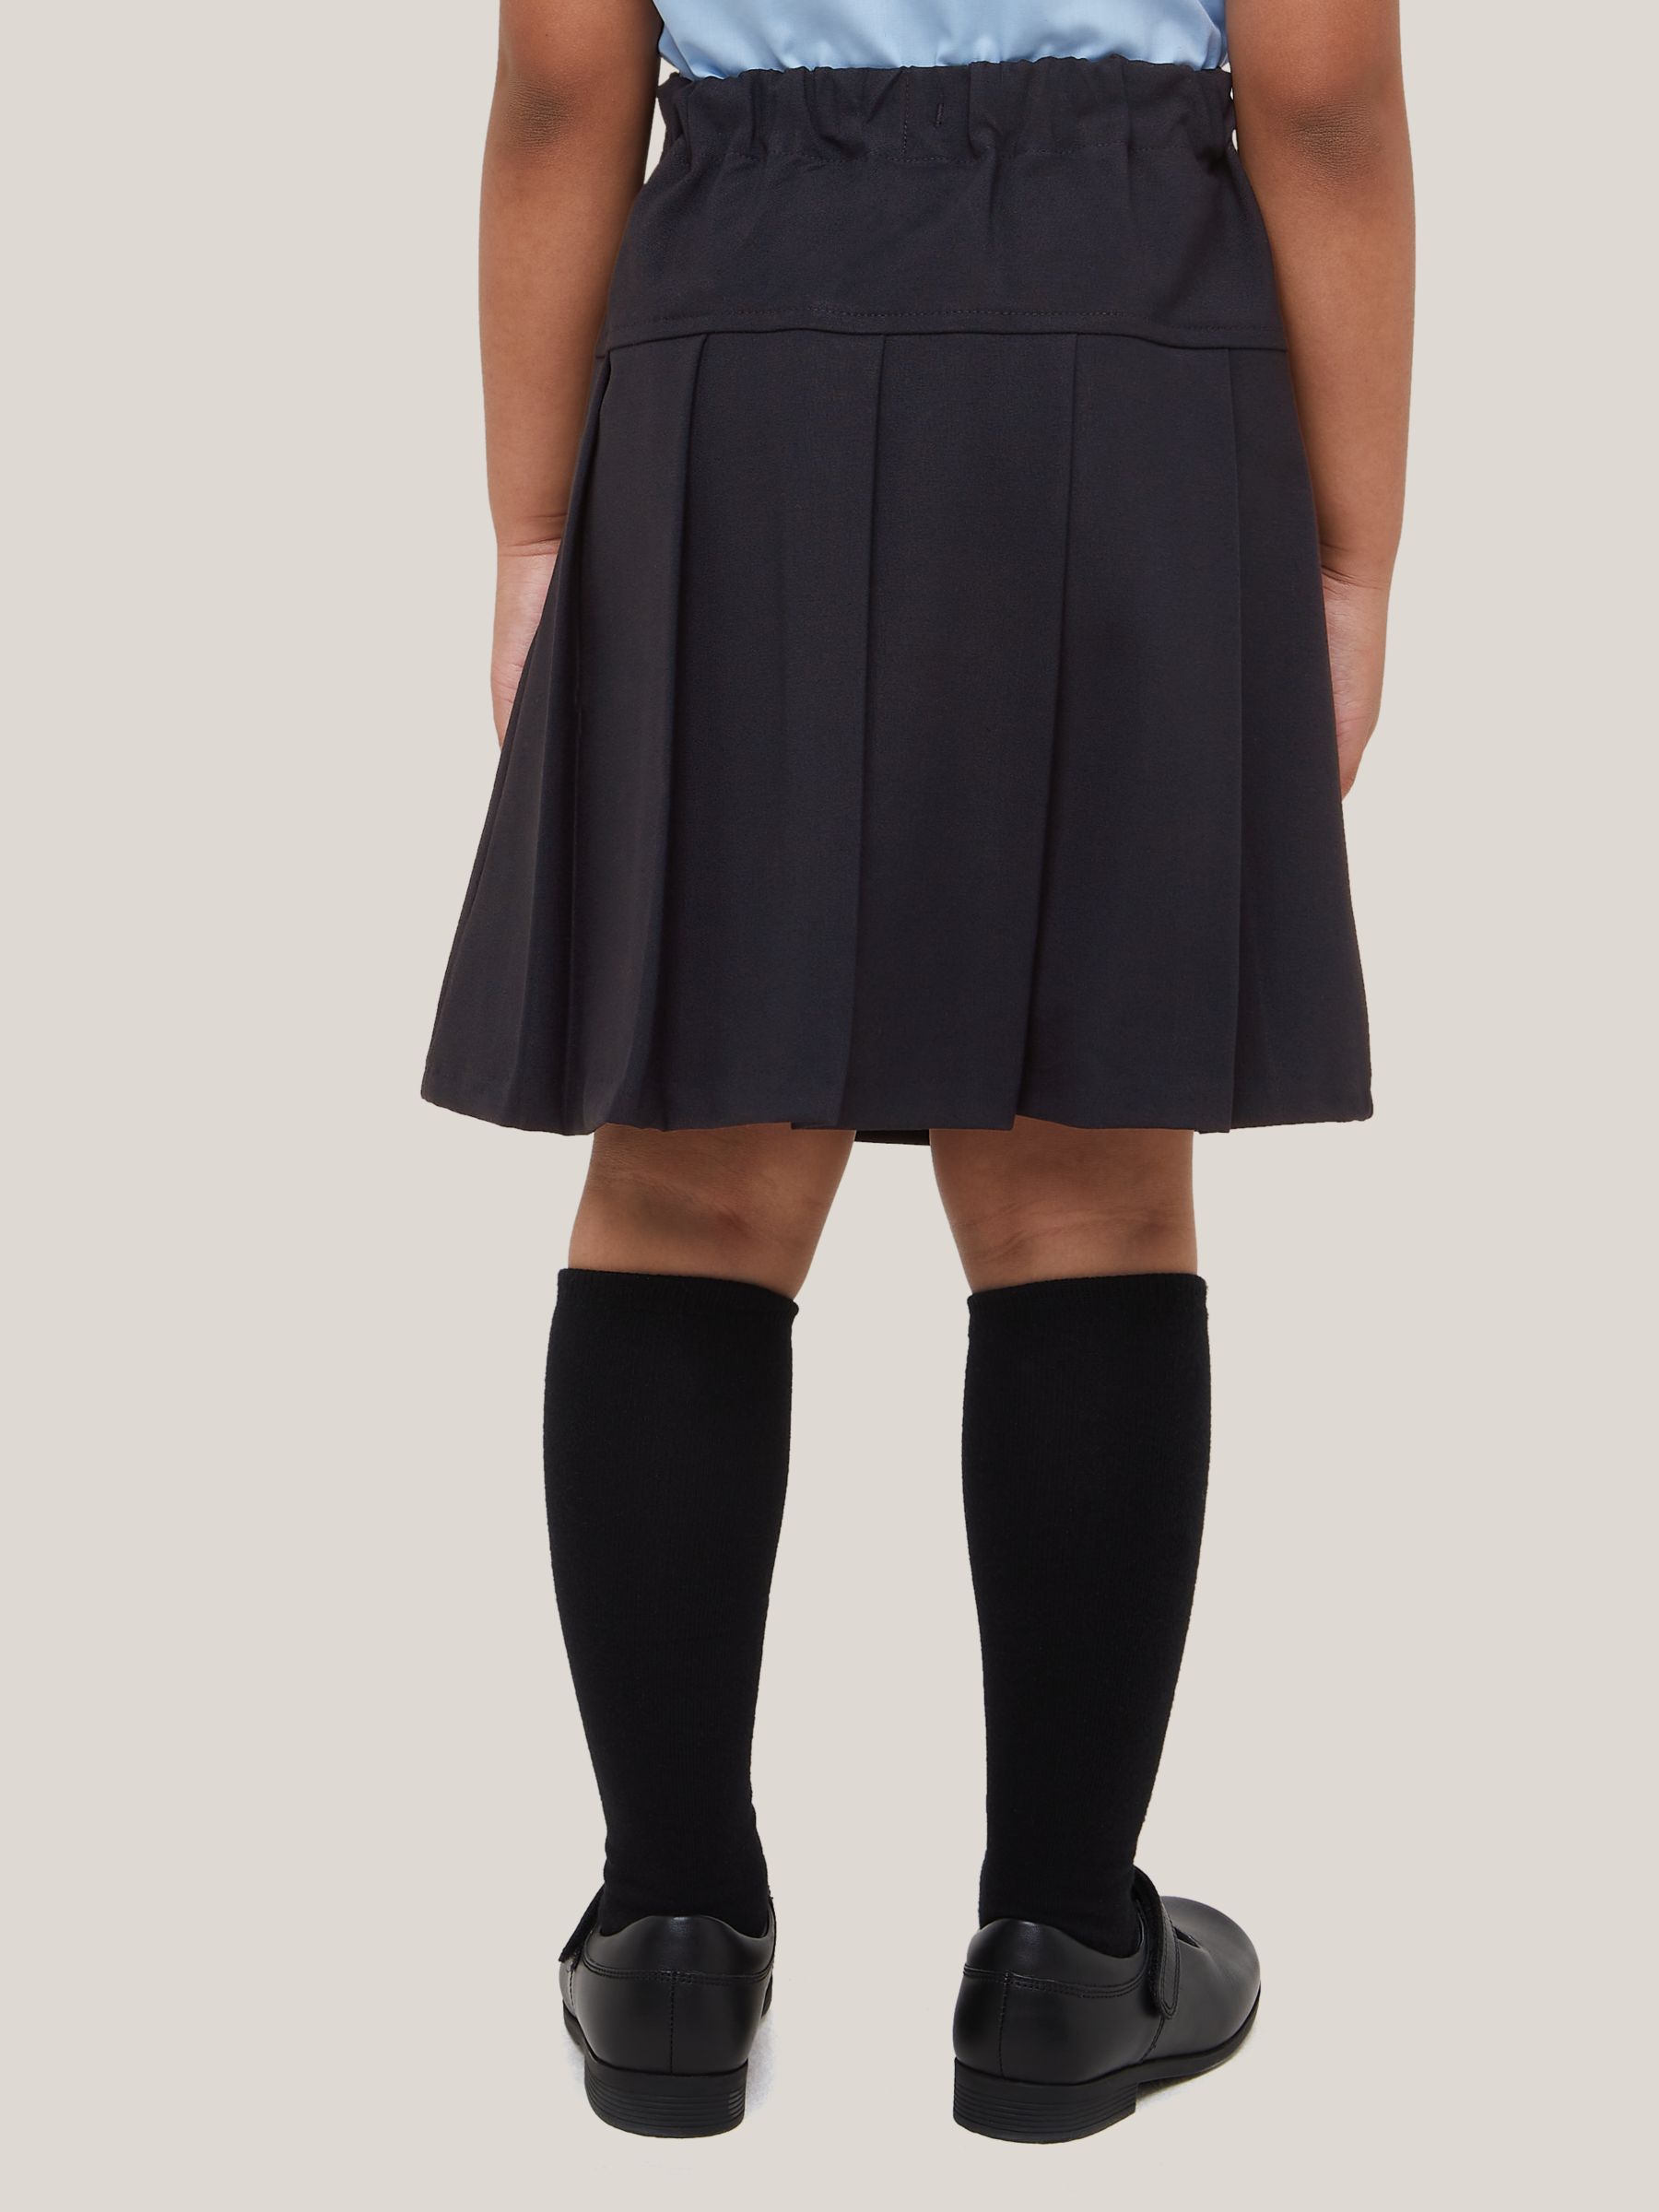 Girls Half Drop Pleated Skirt Black Skirt Women's Skirts Girls Grey School Skirt Black Pleated School Skirt Black School Skirt Navy Blue Skirt Skirts For Women Uk